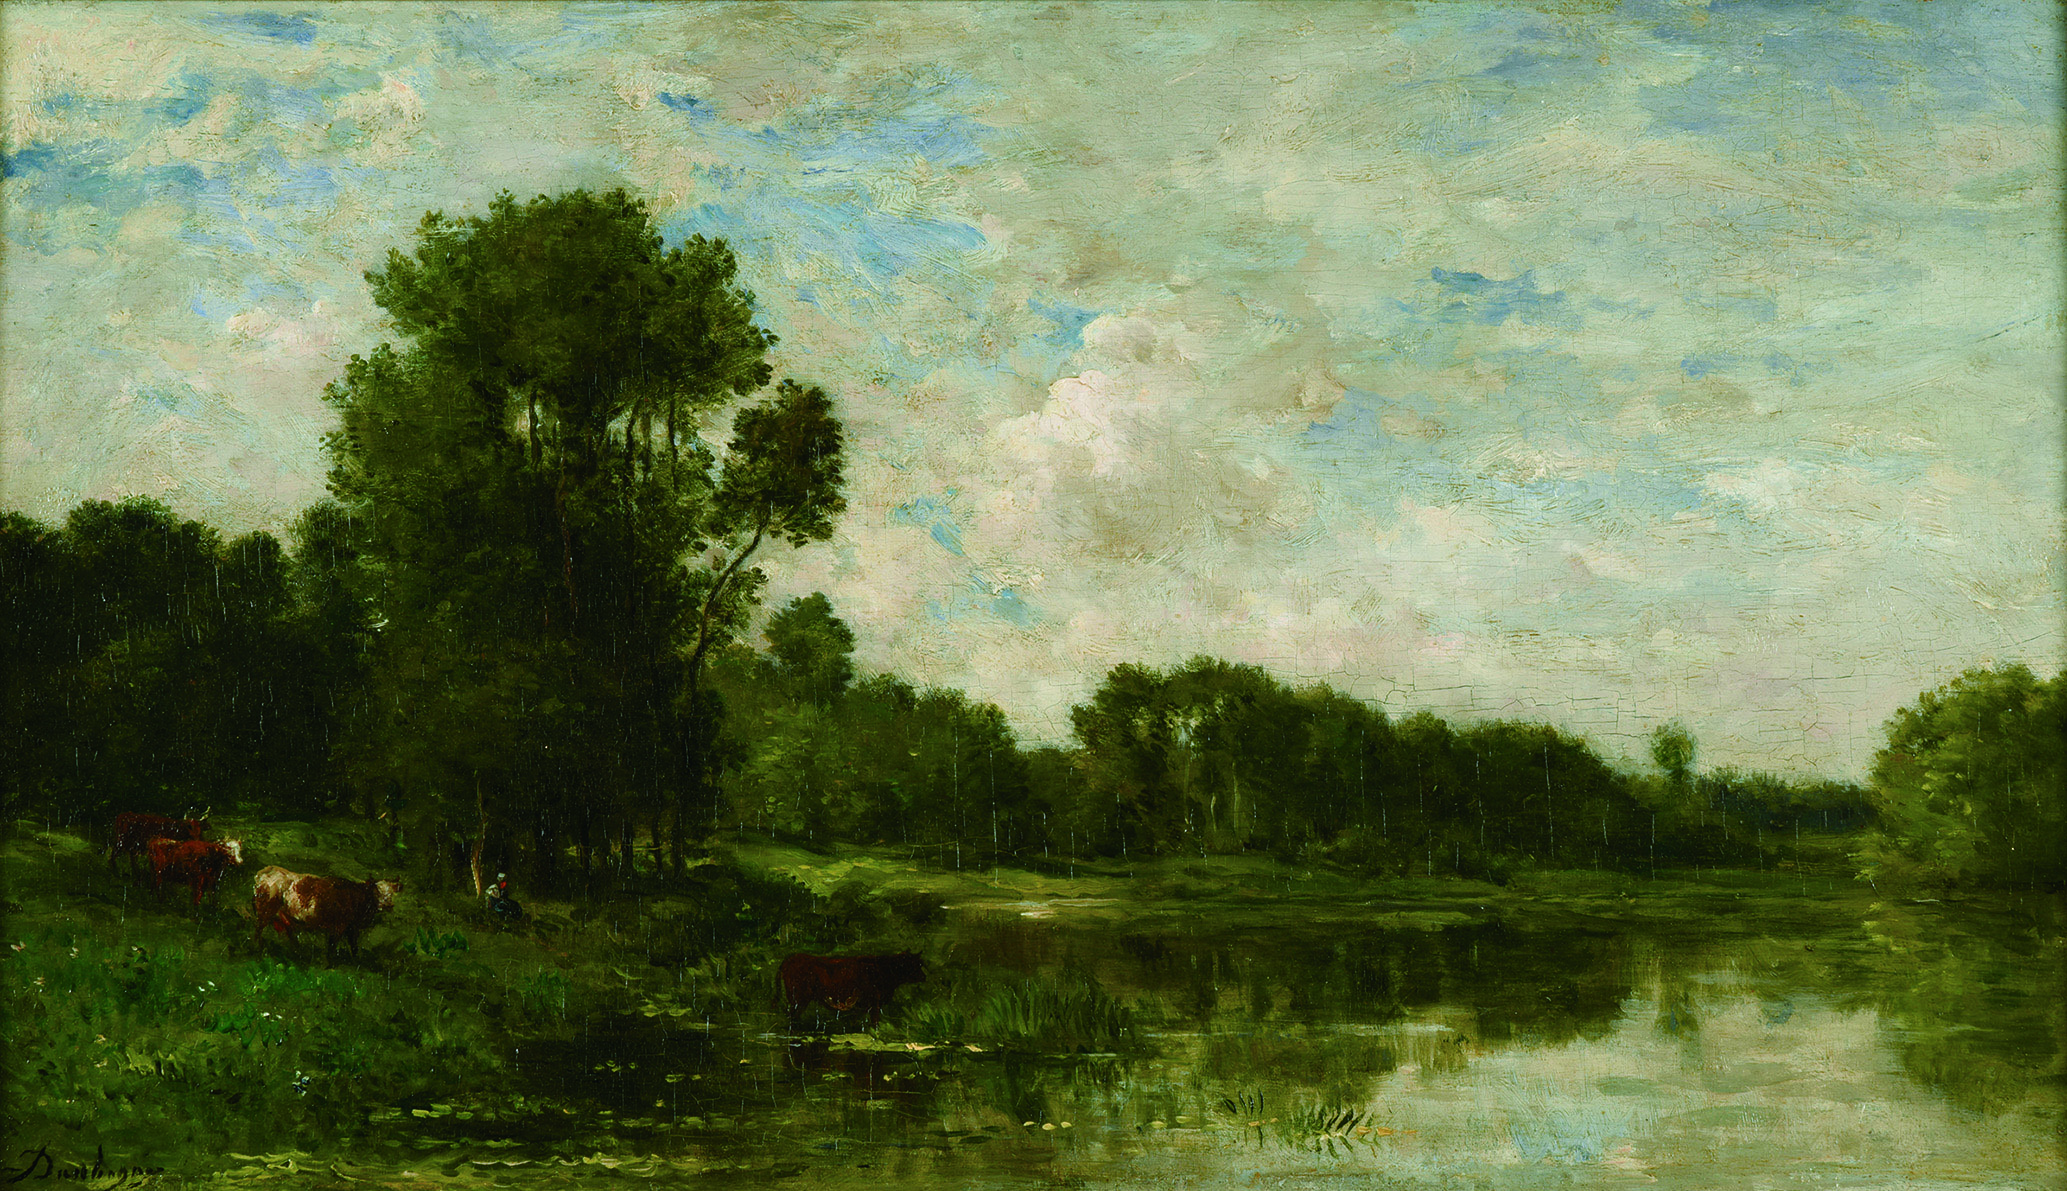 《オワーズ河畔》 1865年頃 油彩/板 32.2×56.8㎝ ランス美術館 (C)Christian Devleeschauwer